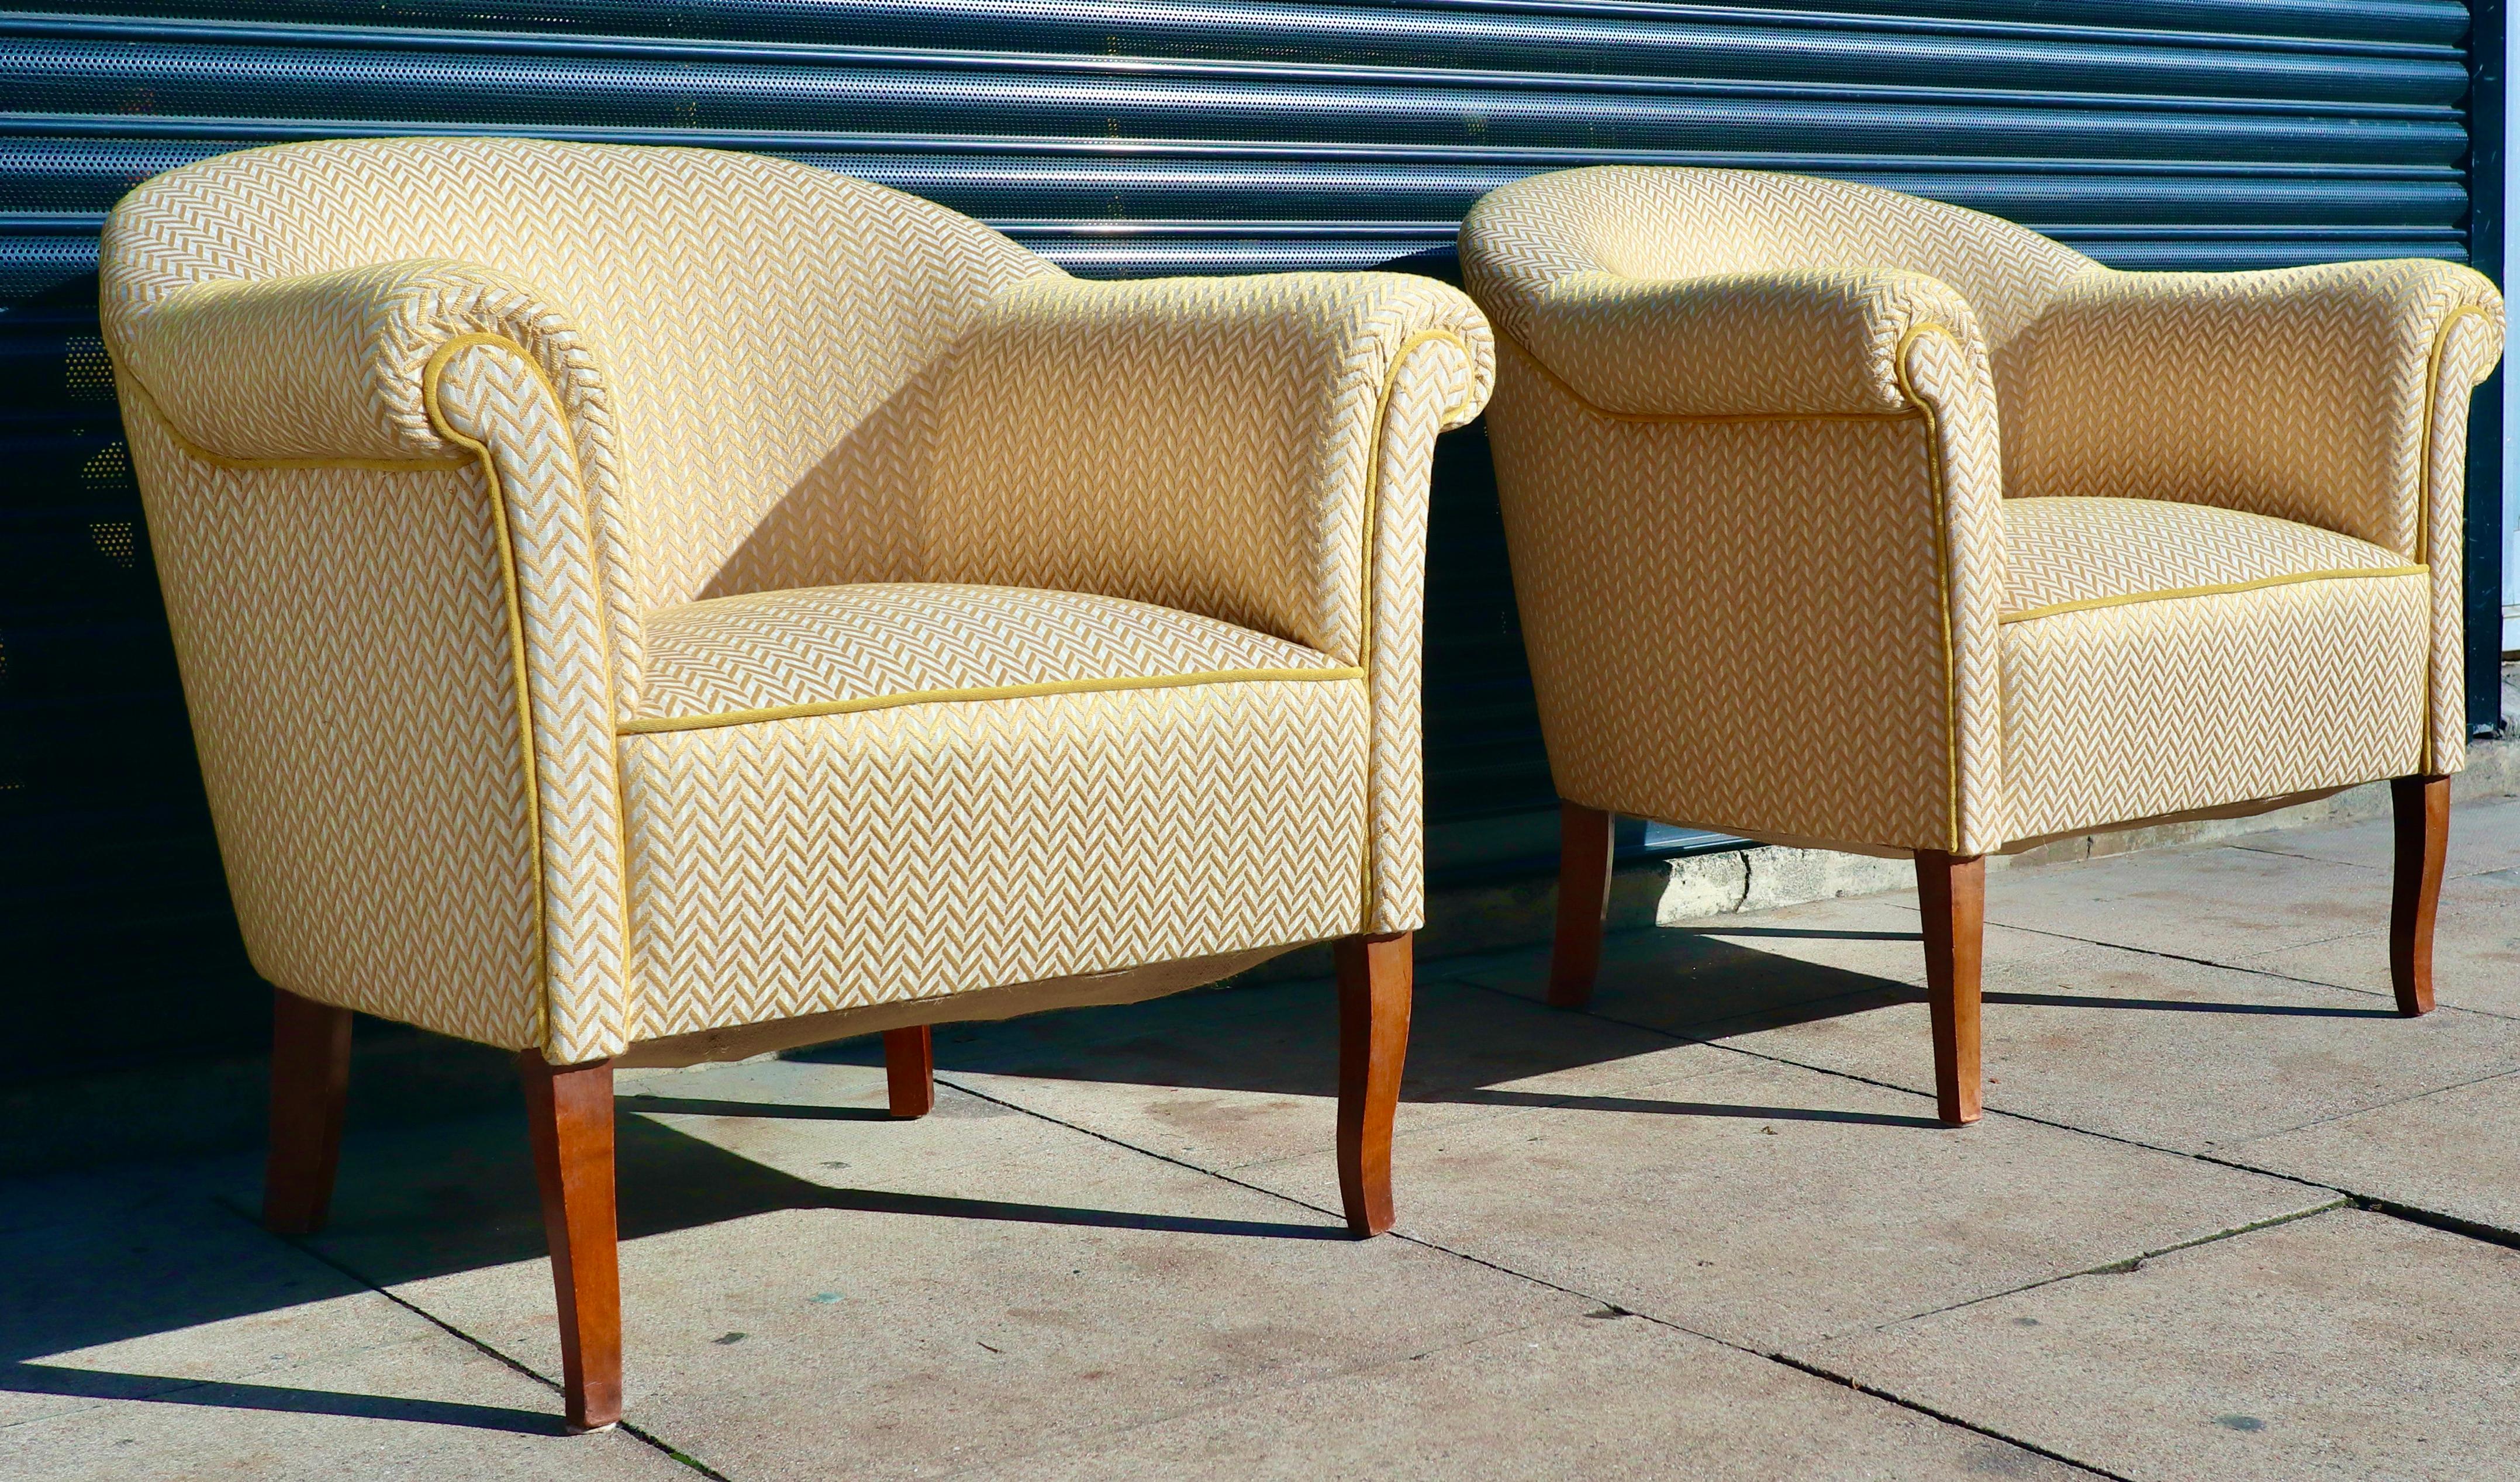 Paire de fauteuils suédois des années 1940/50 sur pieds en hêtre sculpté et teinté.  Ces chaises de qualité ont été revêtues d'un textile à chevrons de couleur jaune.  Les deux fauteuils sont à ressorts et sont extrêmement confortables, tout en